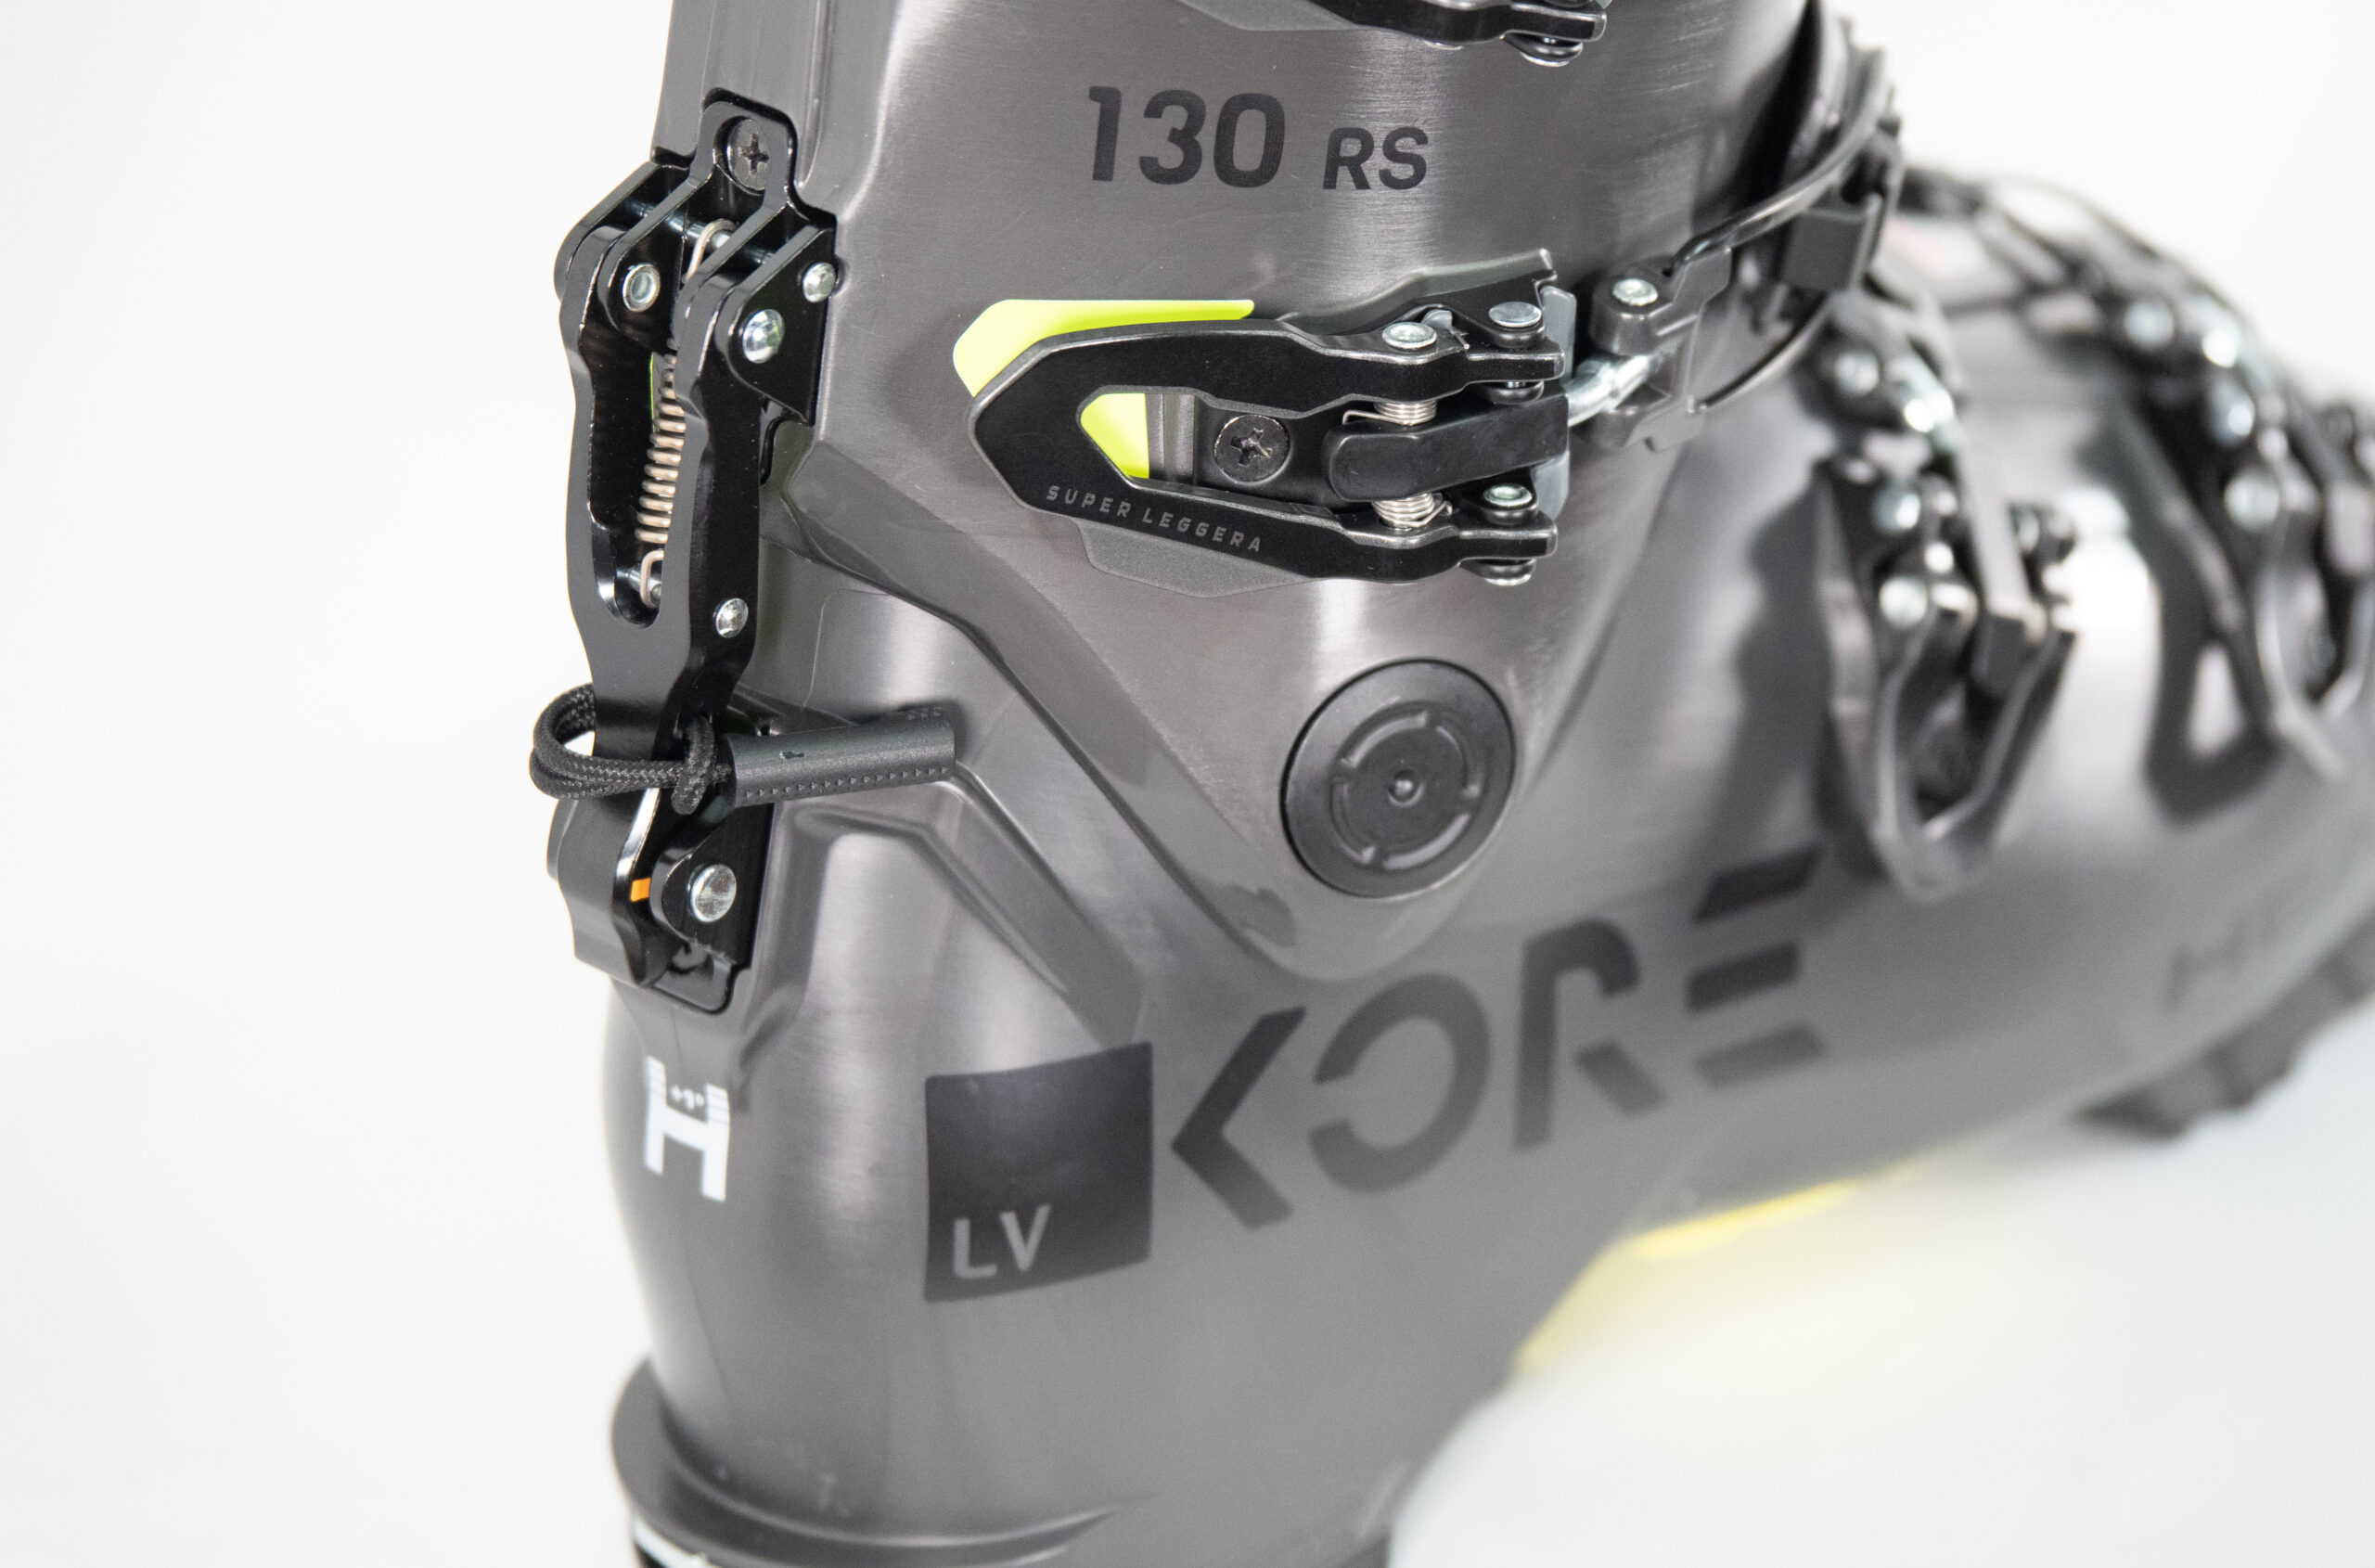 Luke Koppa discusses the 22/23 Head Kore RS 130 GW for Blister